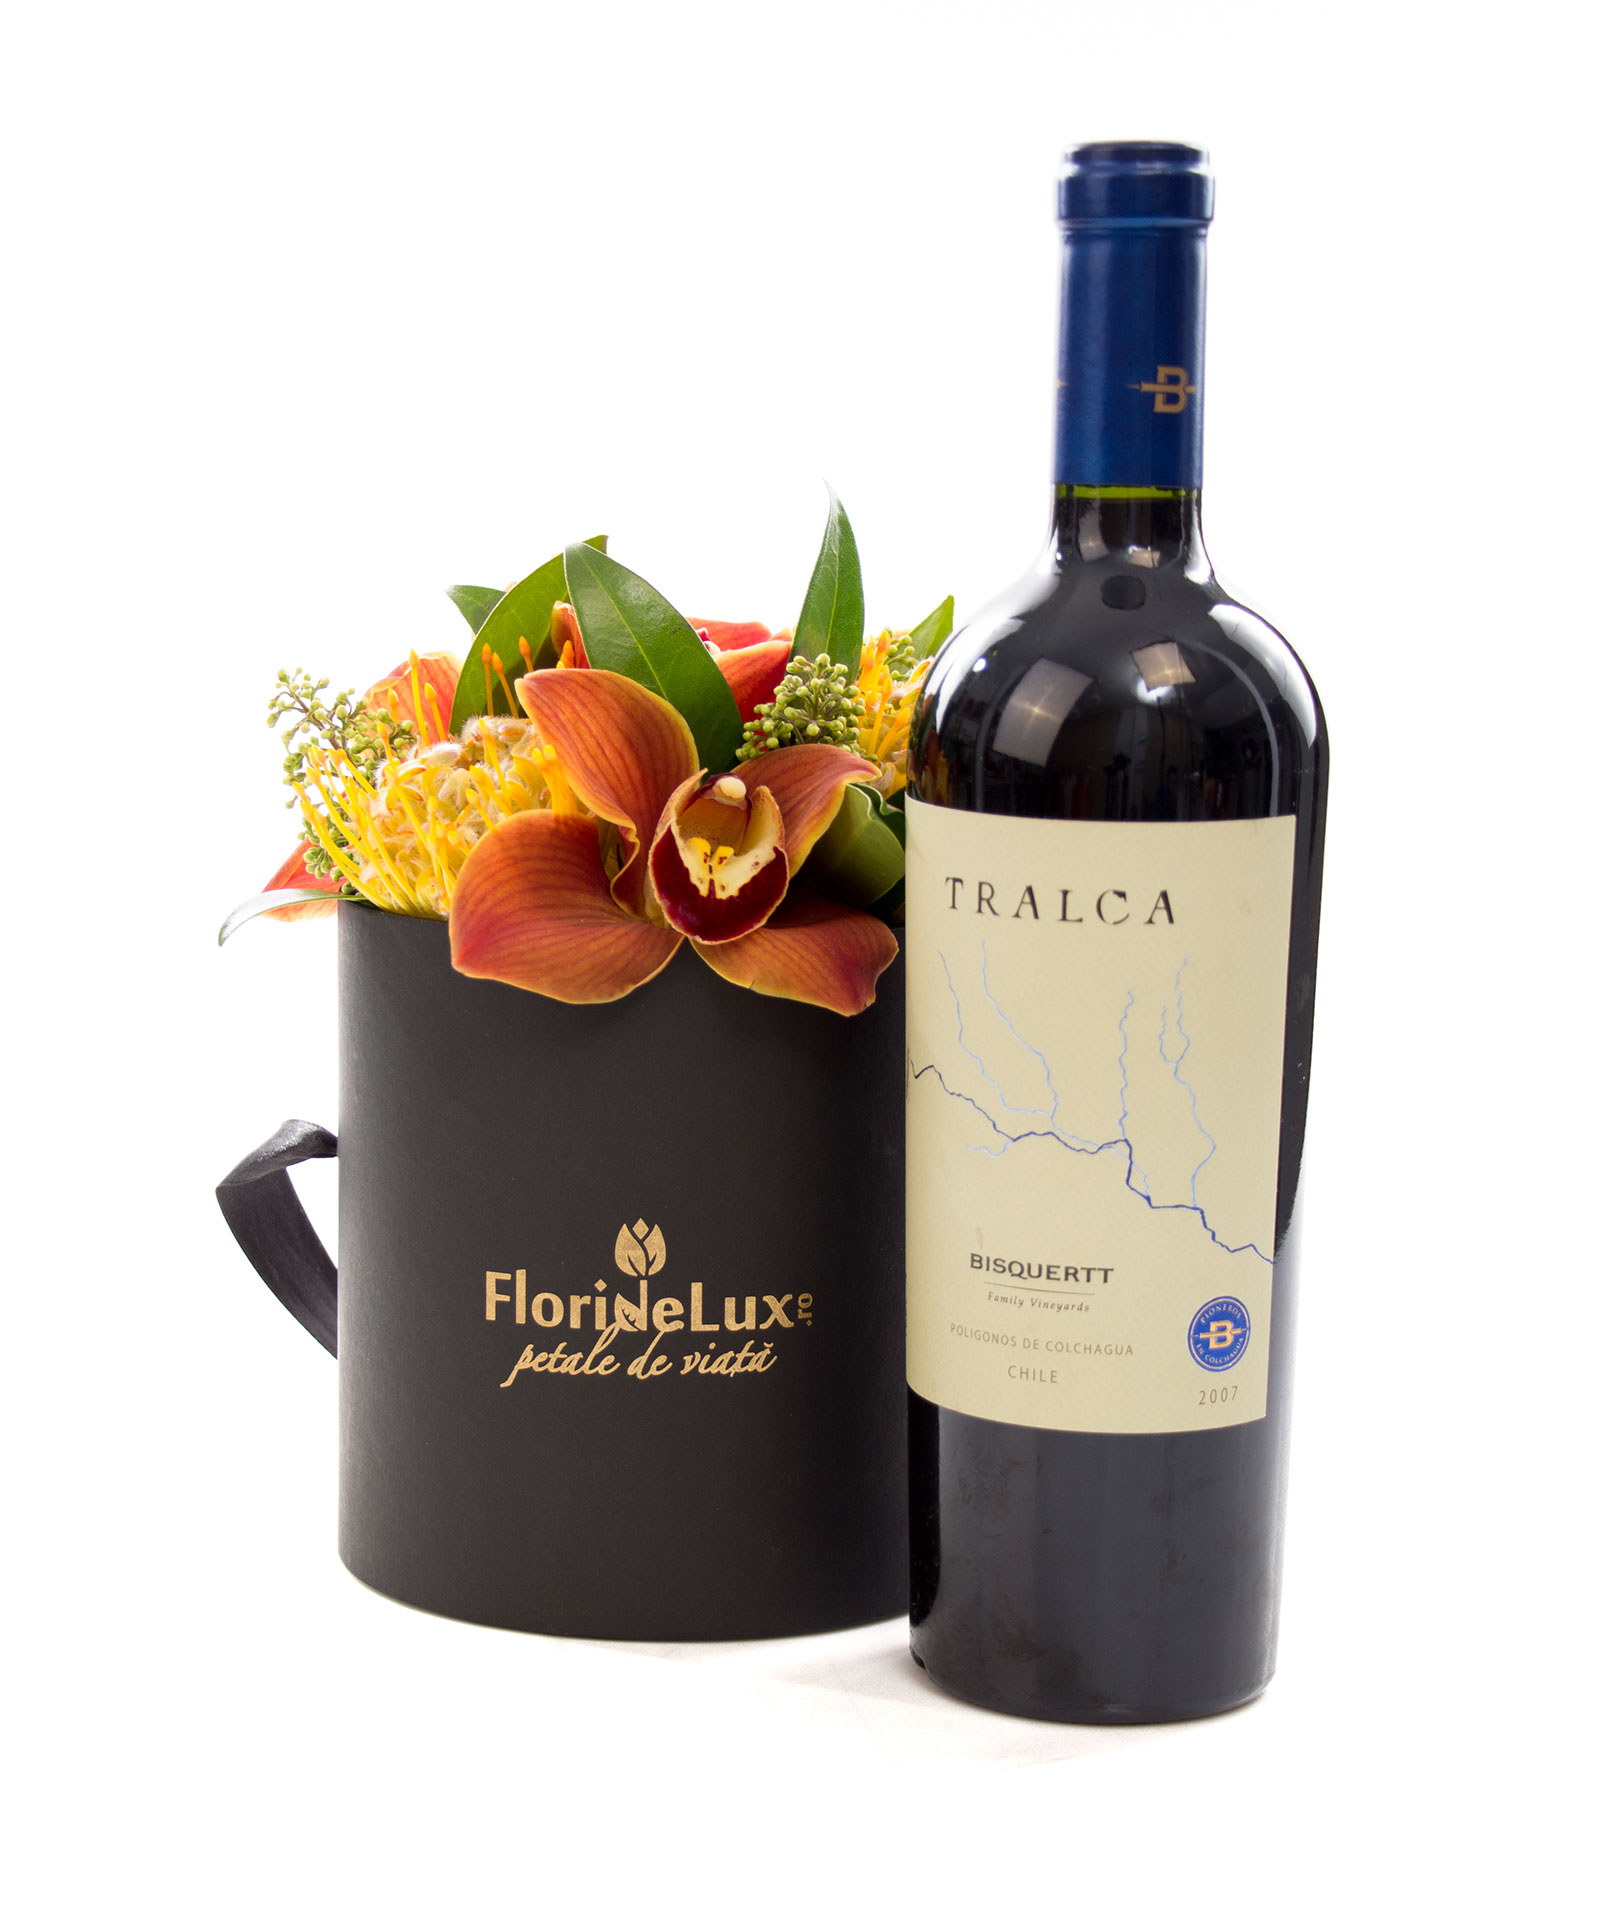 Cutie de lux cu flori exotice si vin Tralca - cele mai frumoase cadou uimesc prin originalitate si eleganta. Iar aceasta cutie neagra cu auriu plina cu flori exotice rare face exact aceasta impresie! Desigur, cadoul este completat de o sticla de vin 